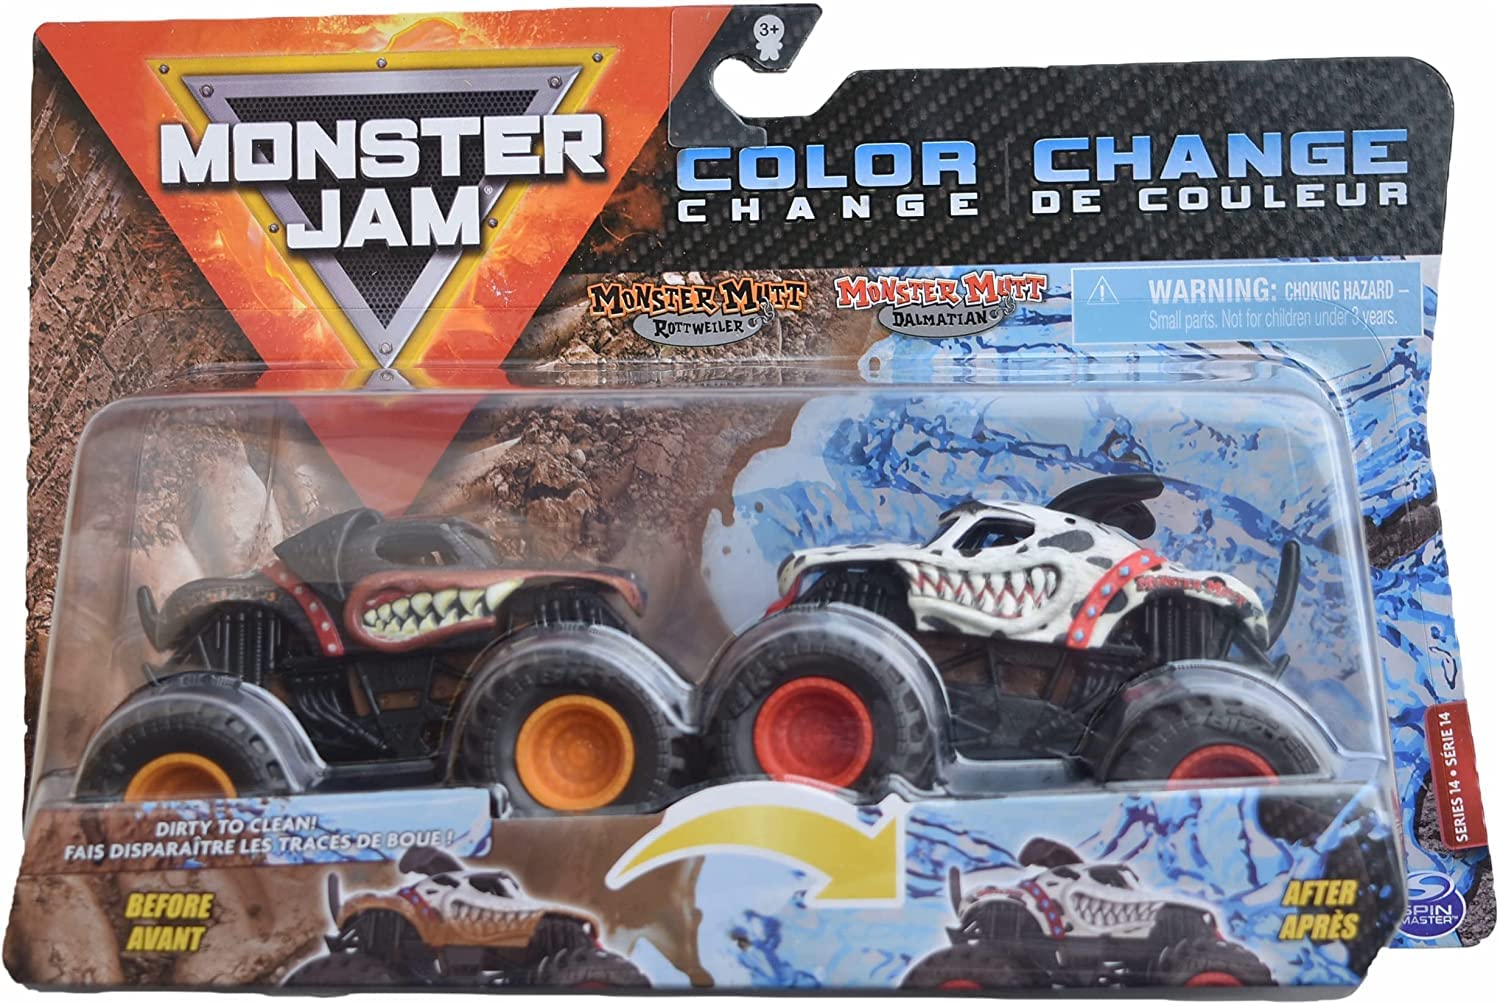 DieCast Monster Jam Color Change [Monster Mutt Rottweiler vs Monster Mutt Dalmatian] 1:64 Scale Double Pack